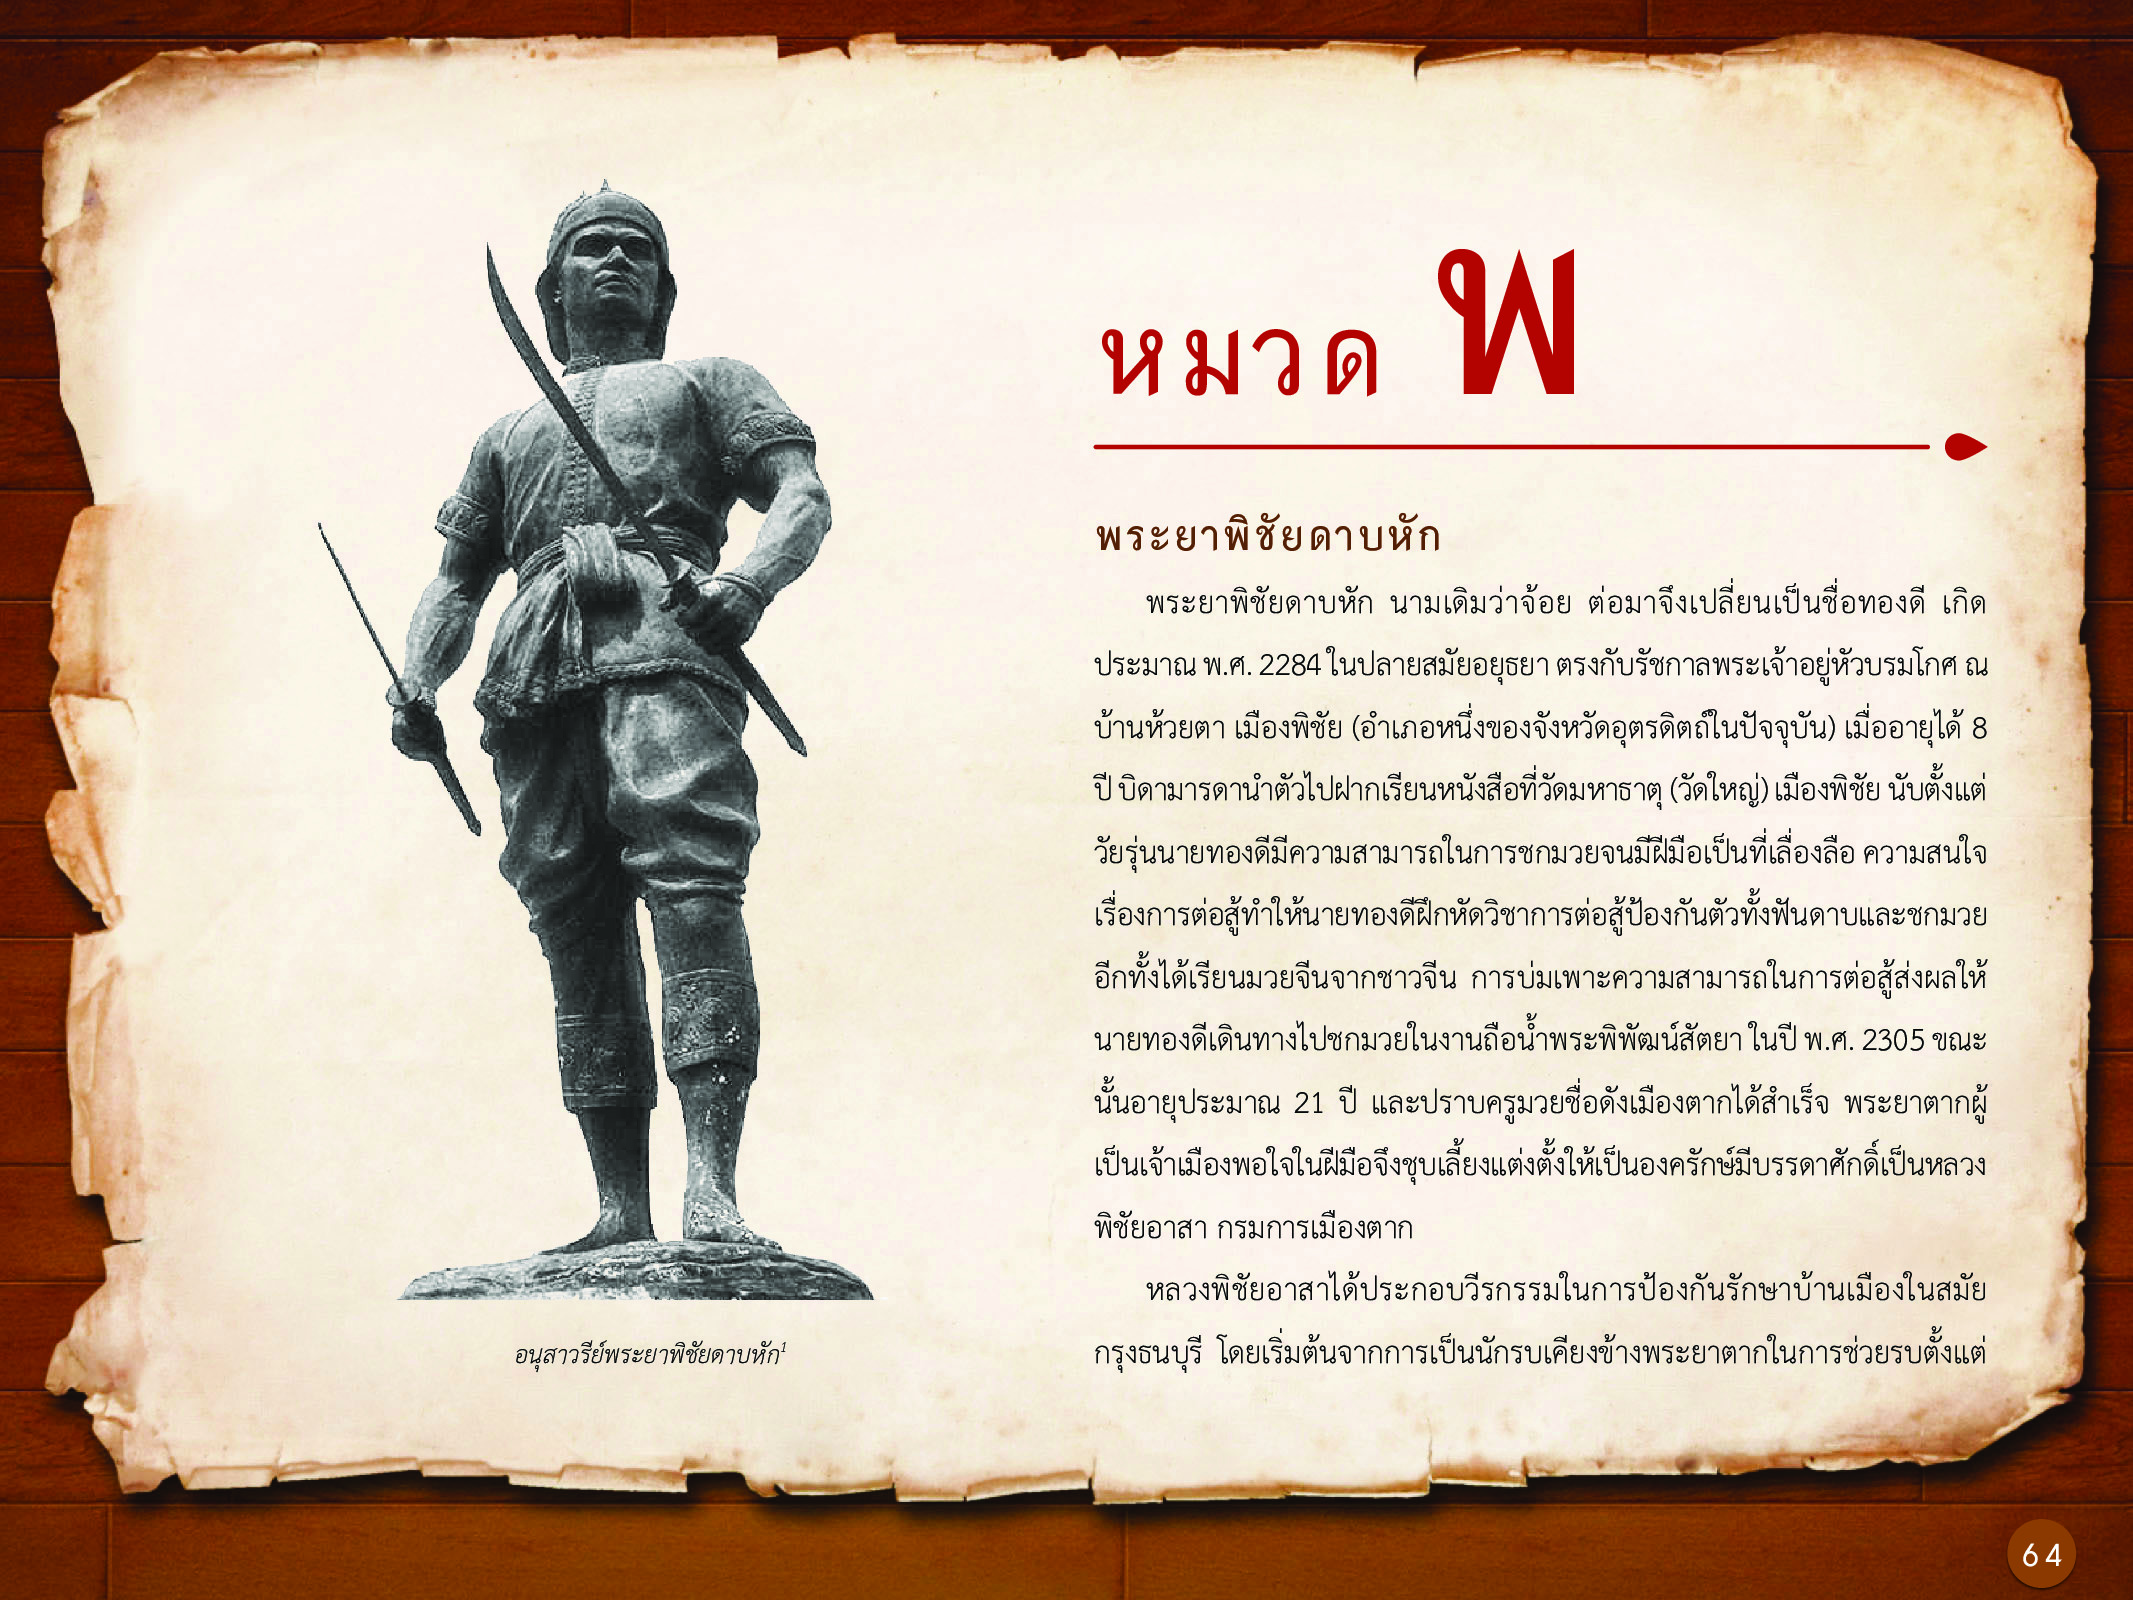 ประวัติศาสตร์กรุงธนบุรี ./images/history_dhonburi/64.jpg